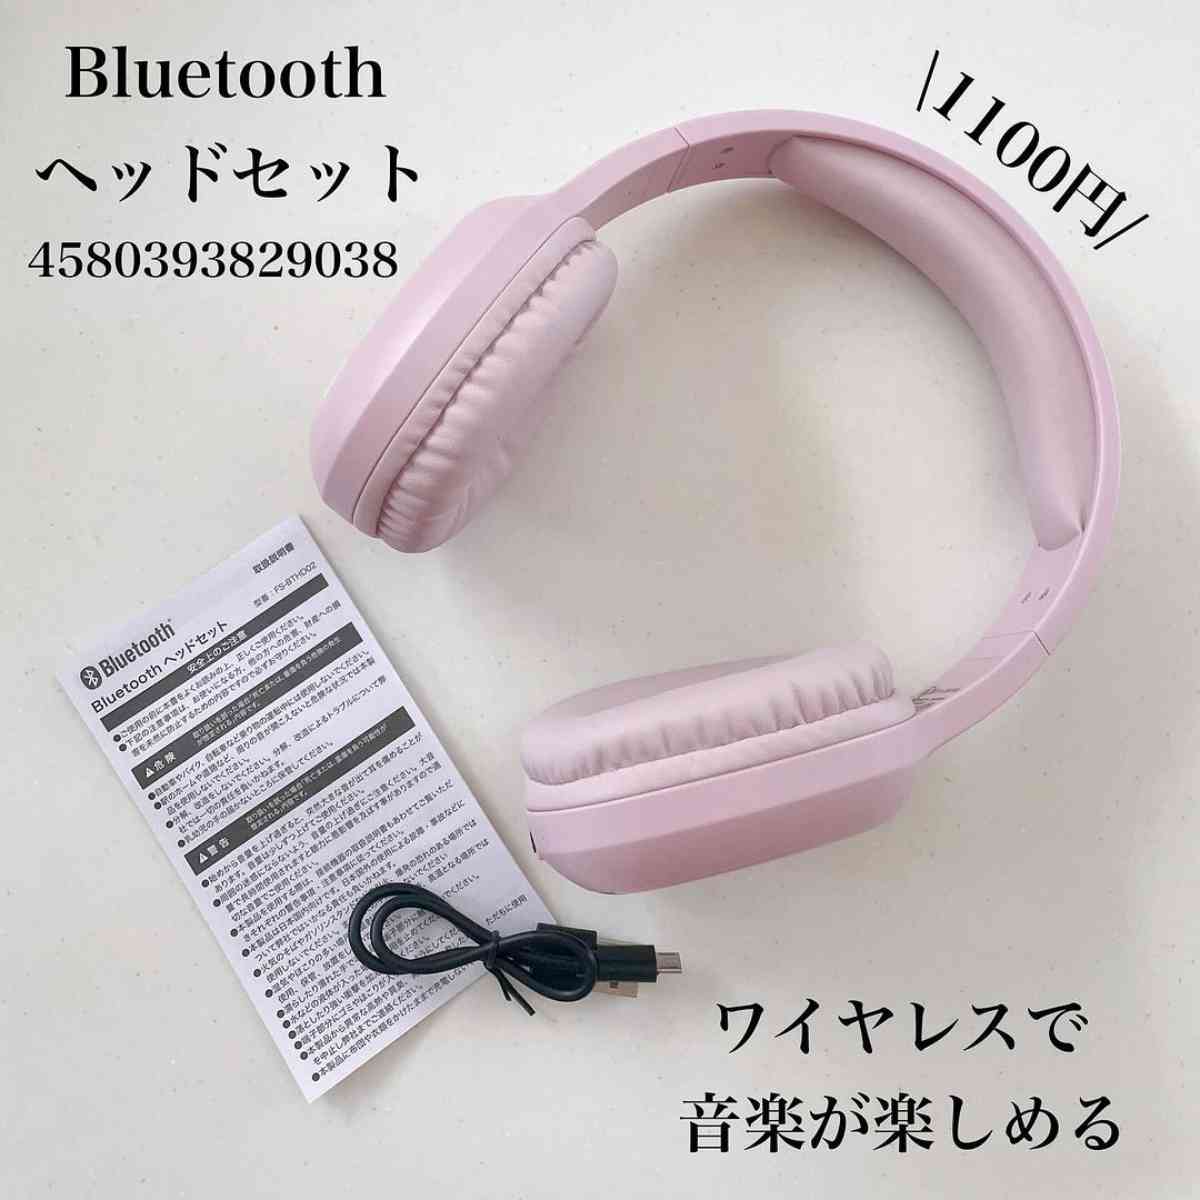 ダイソーの「Bluetooth ヘッドセット」